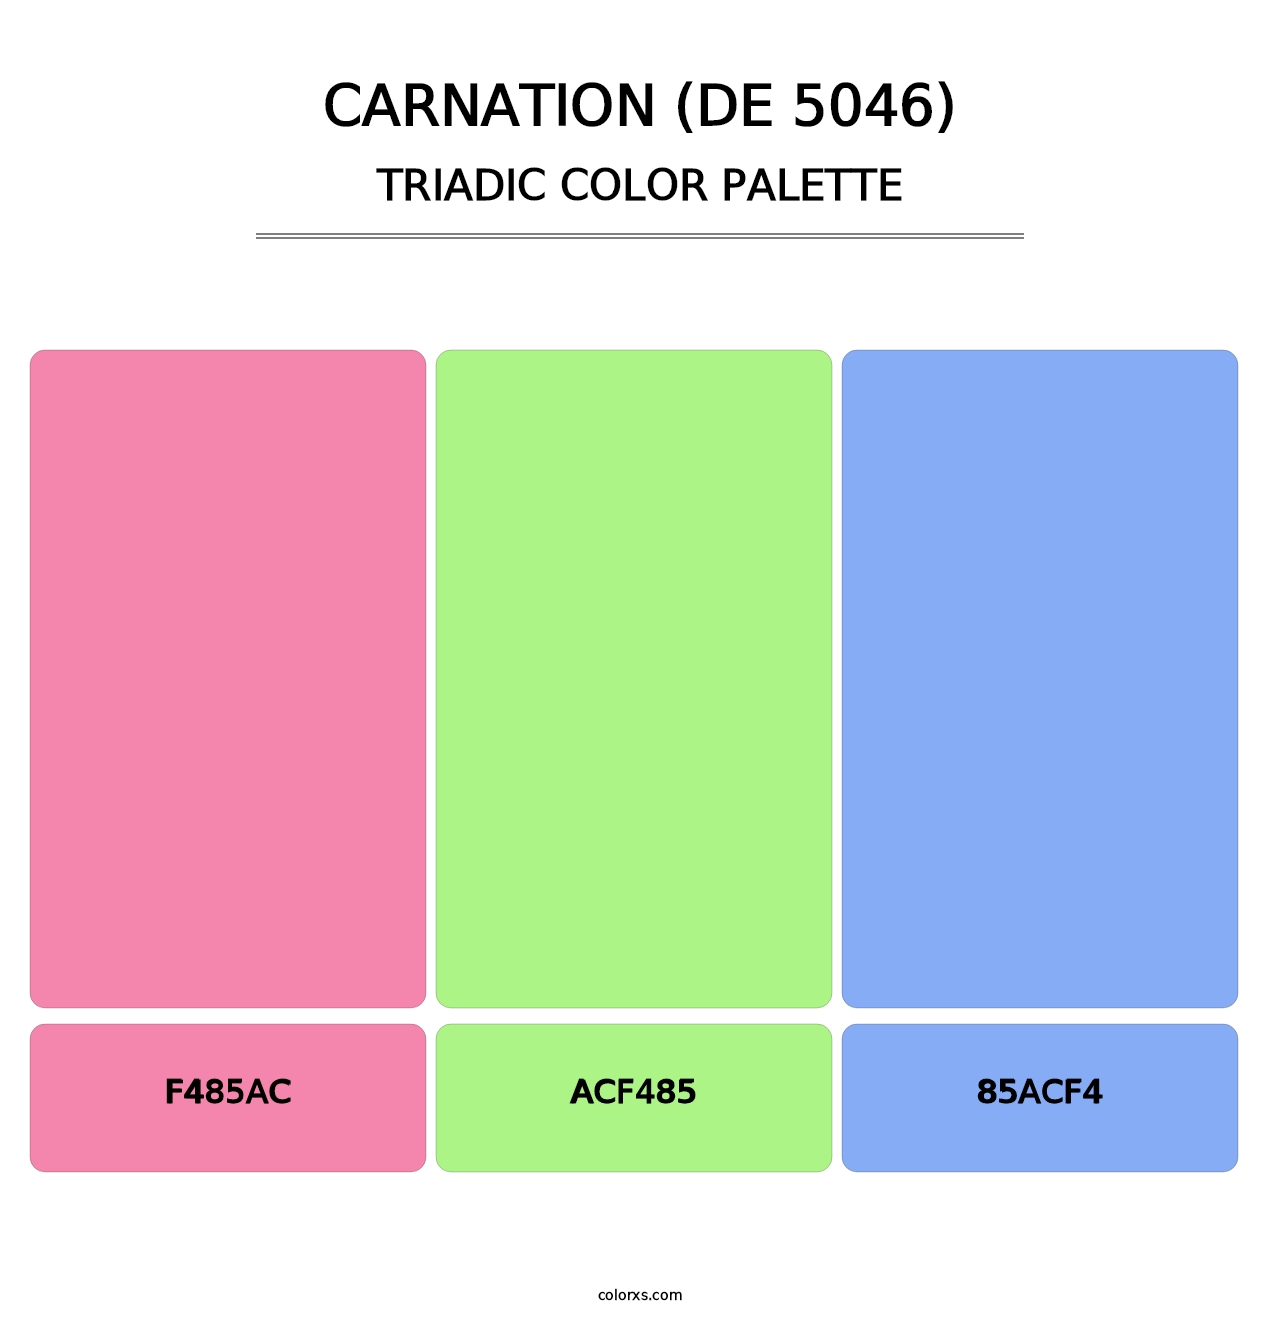 Carnation (DE 5046) - Triadic Color Palette